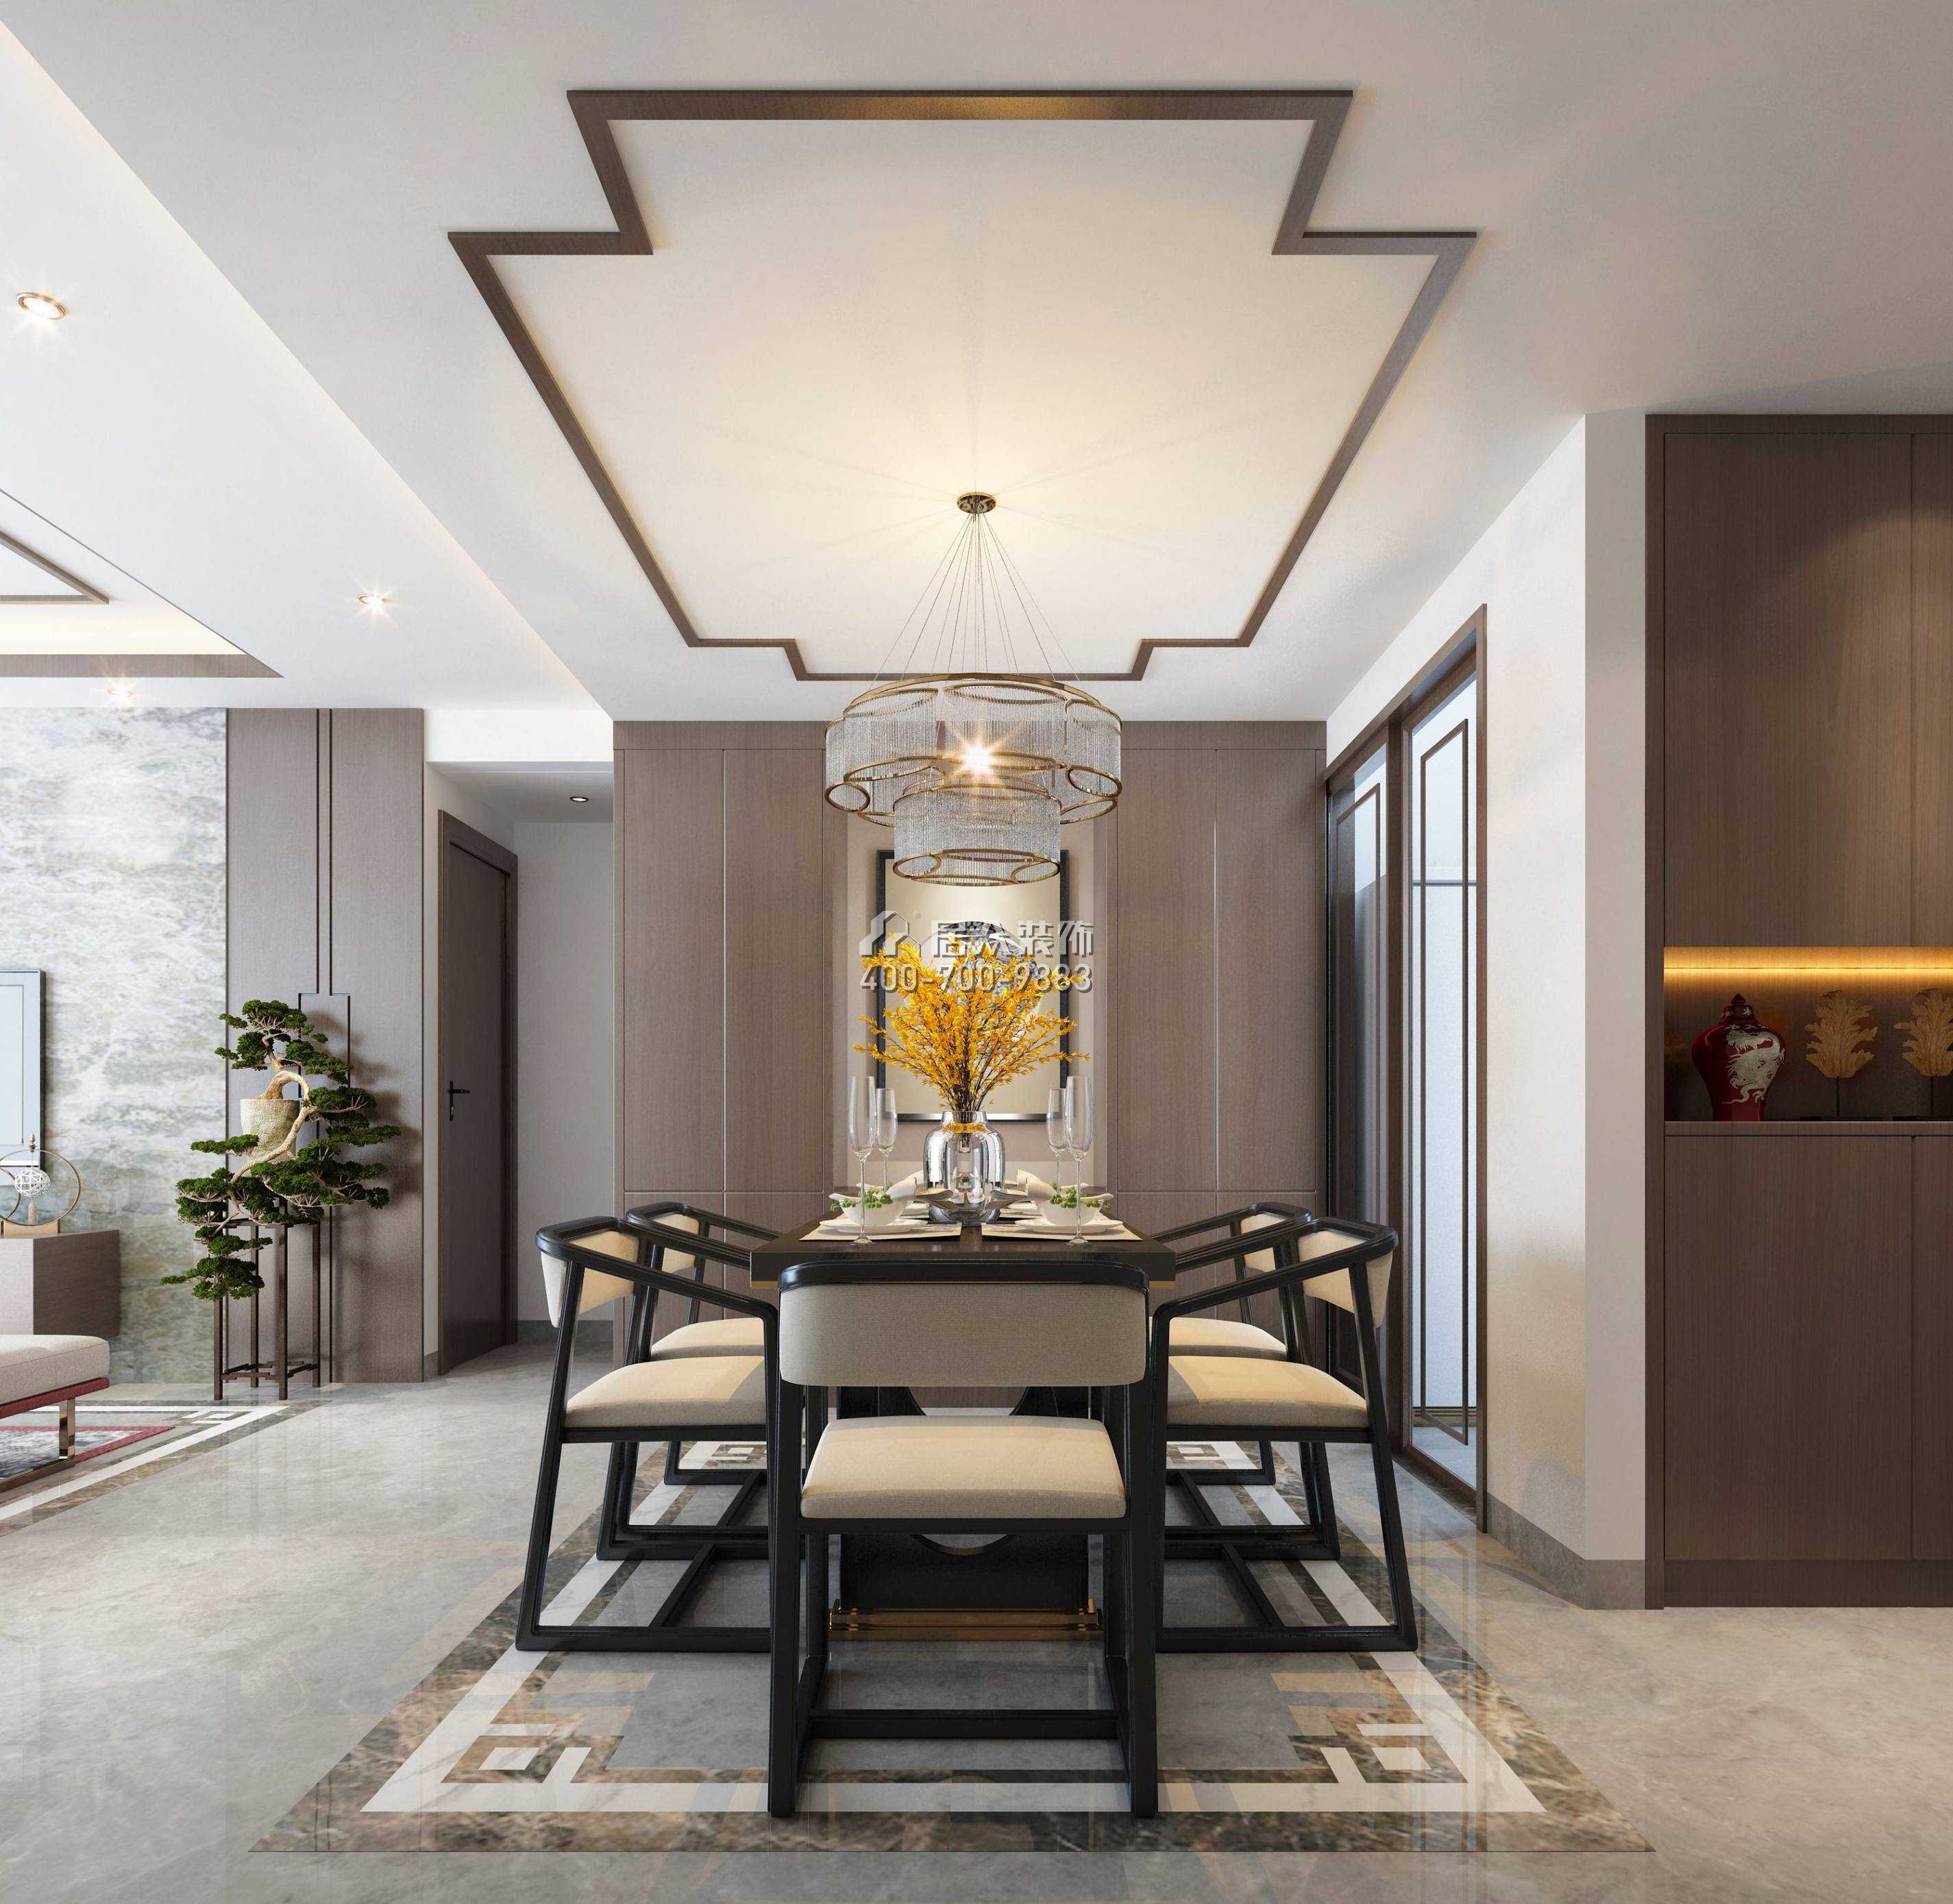 平吉上苑二期98平方米中式风格平层户型餐厅装修效果图